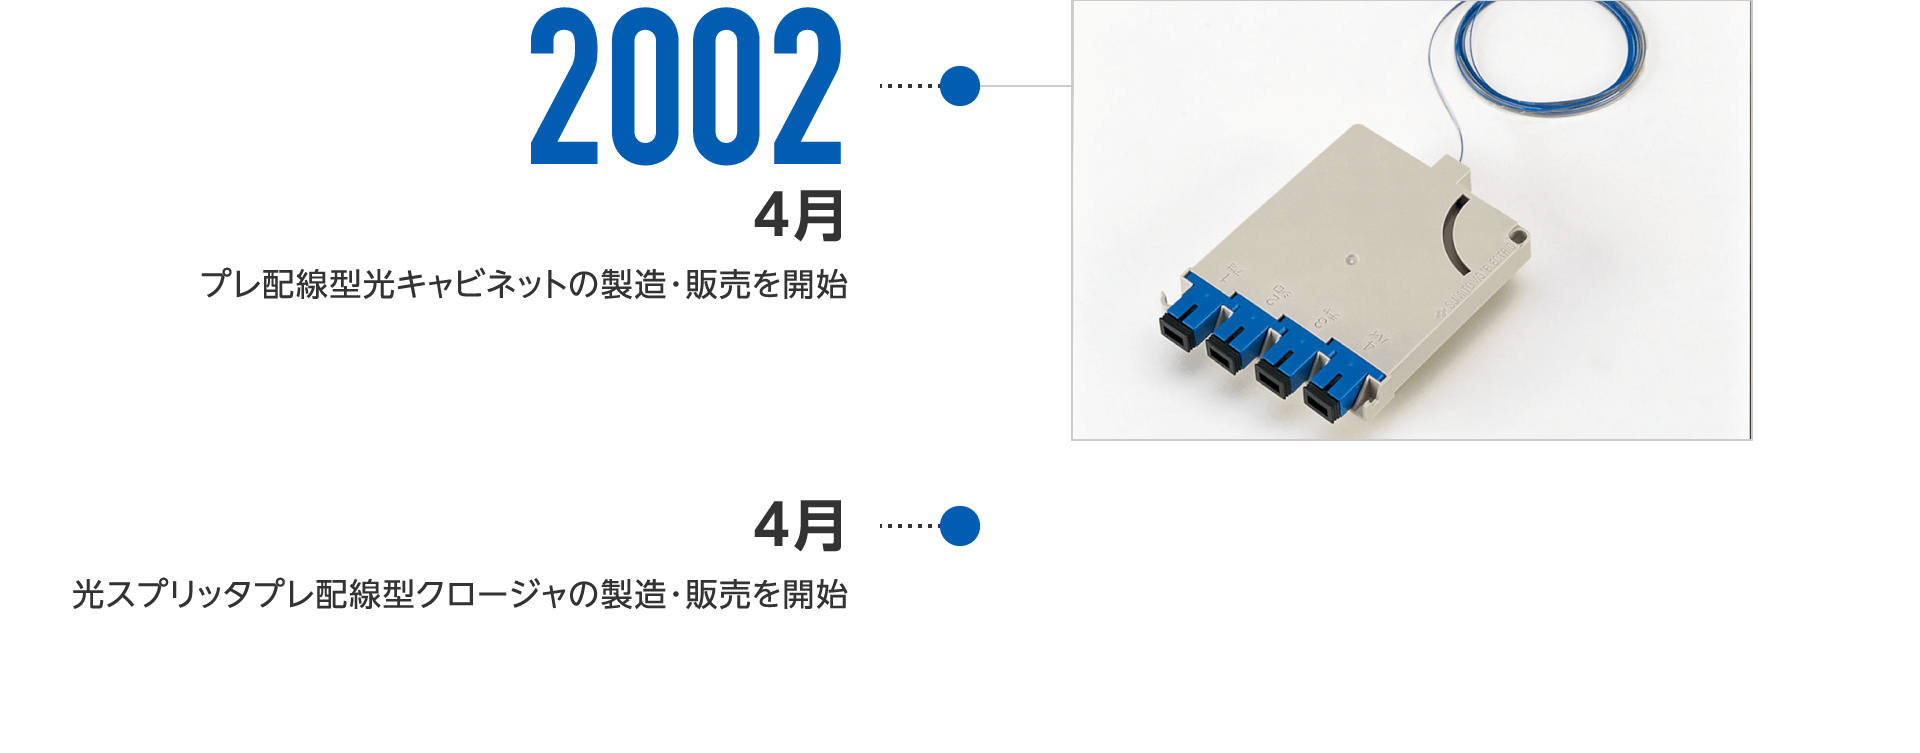 2002年4月-プレ配線型光キャビネットの製造・販売を開始、4月-光スプリッタプレ配線型クロージャの製造・販売を開始